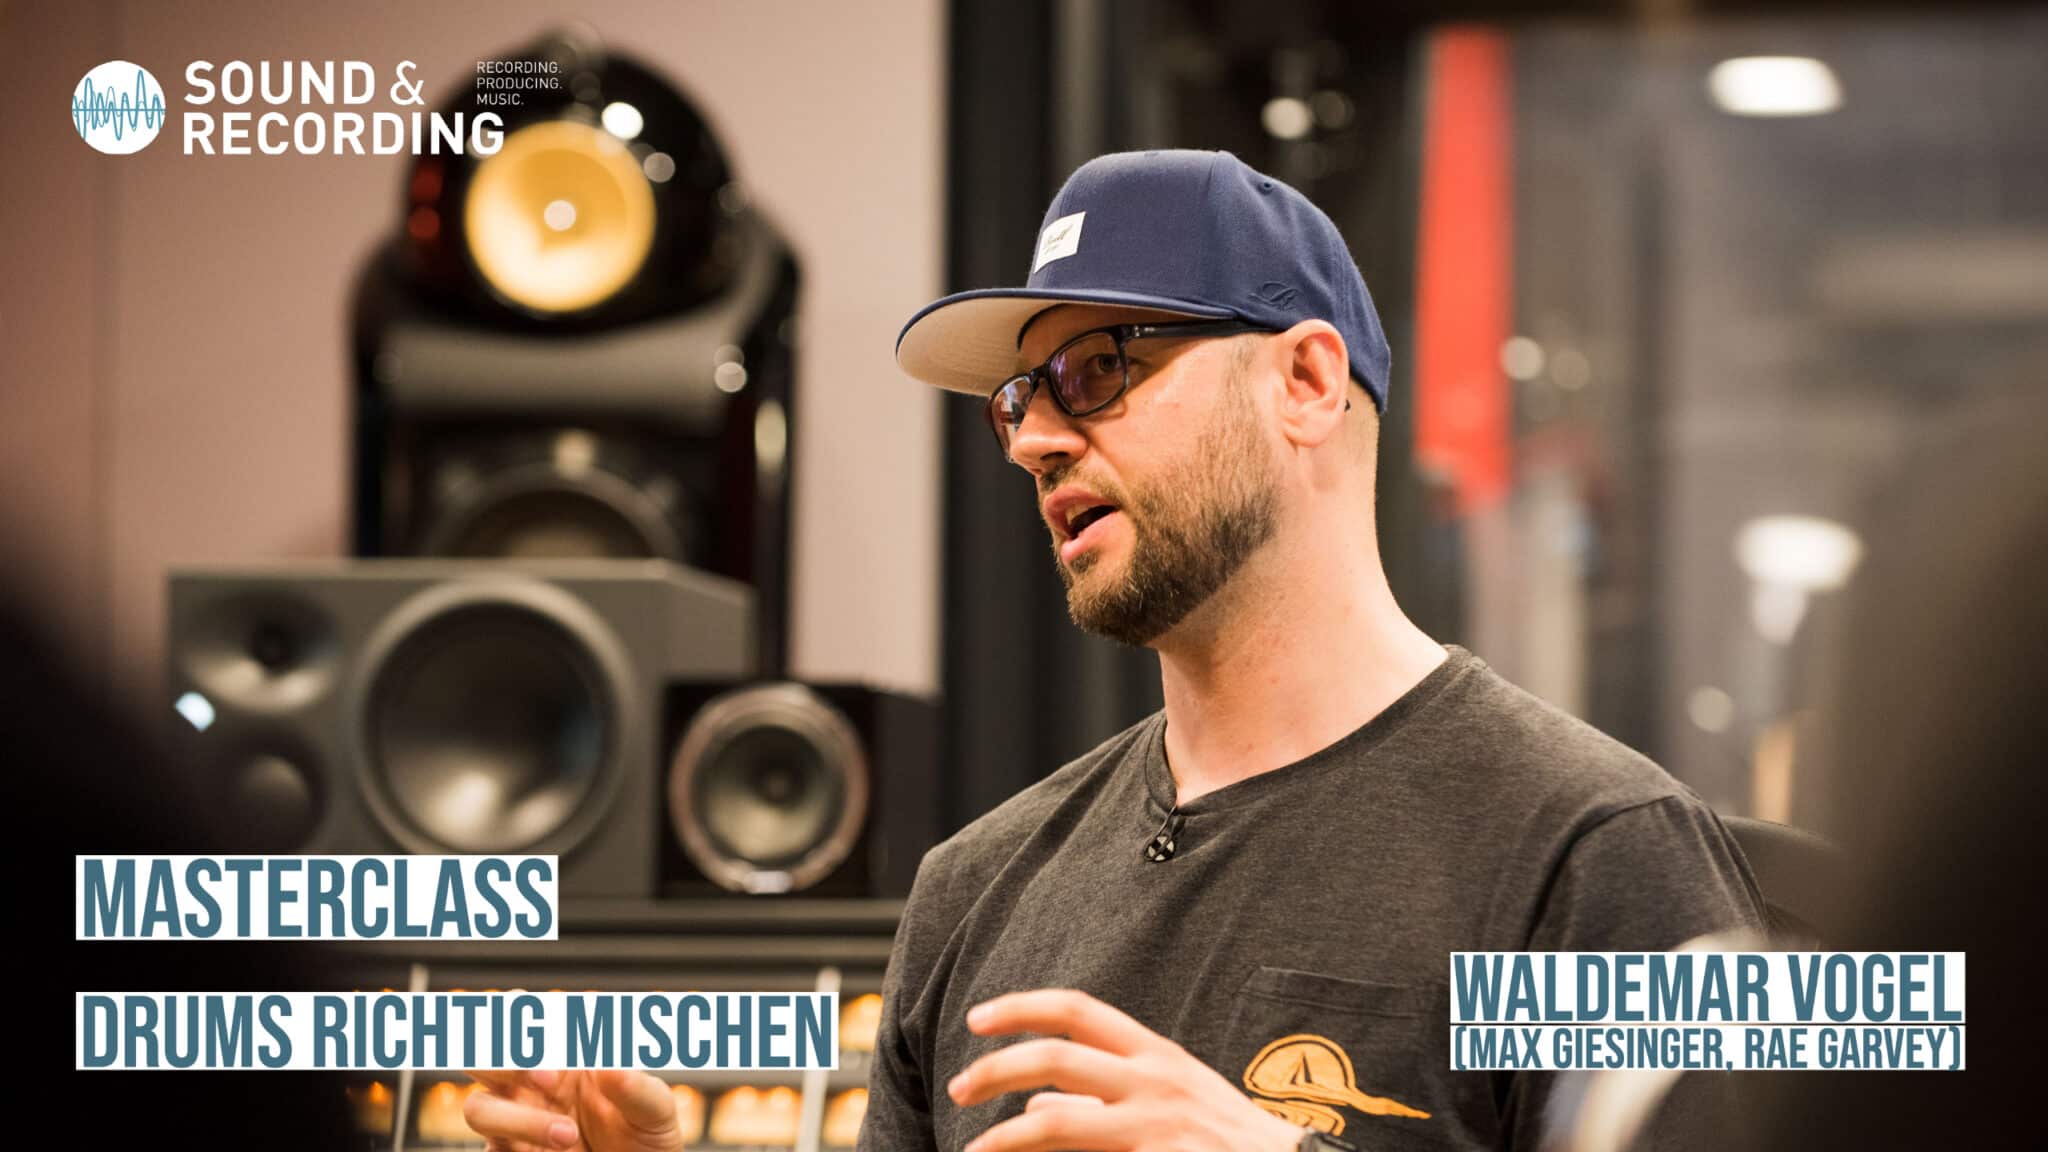 Produkt: Masterclass: Drums mischen im Indie-Style mit Mixing Engineer Waldemar Vogel